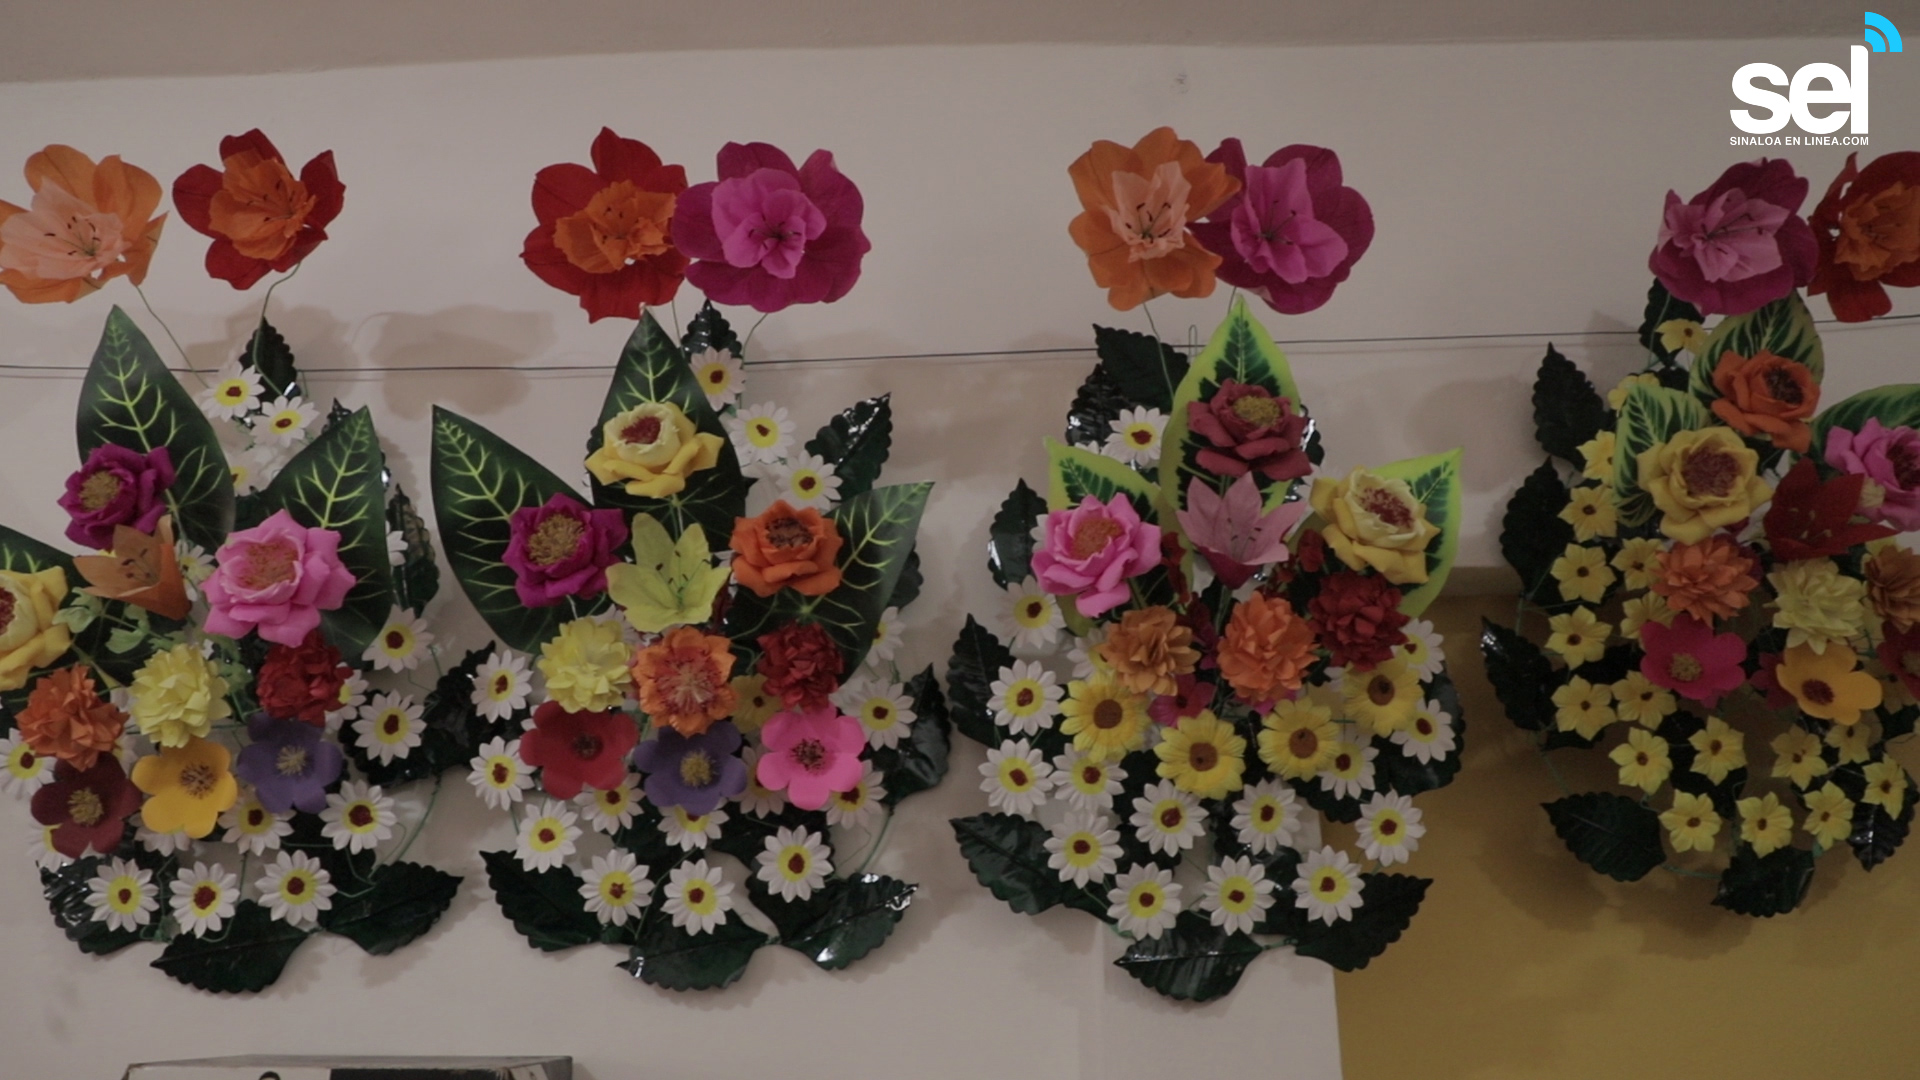 El Arte de Hacer Coronas Para el “Día de Muertos” | Sinaloa en Linea